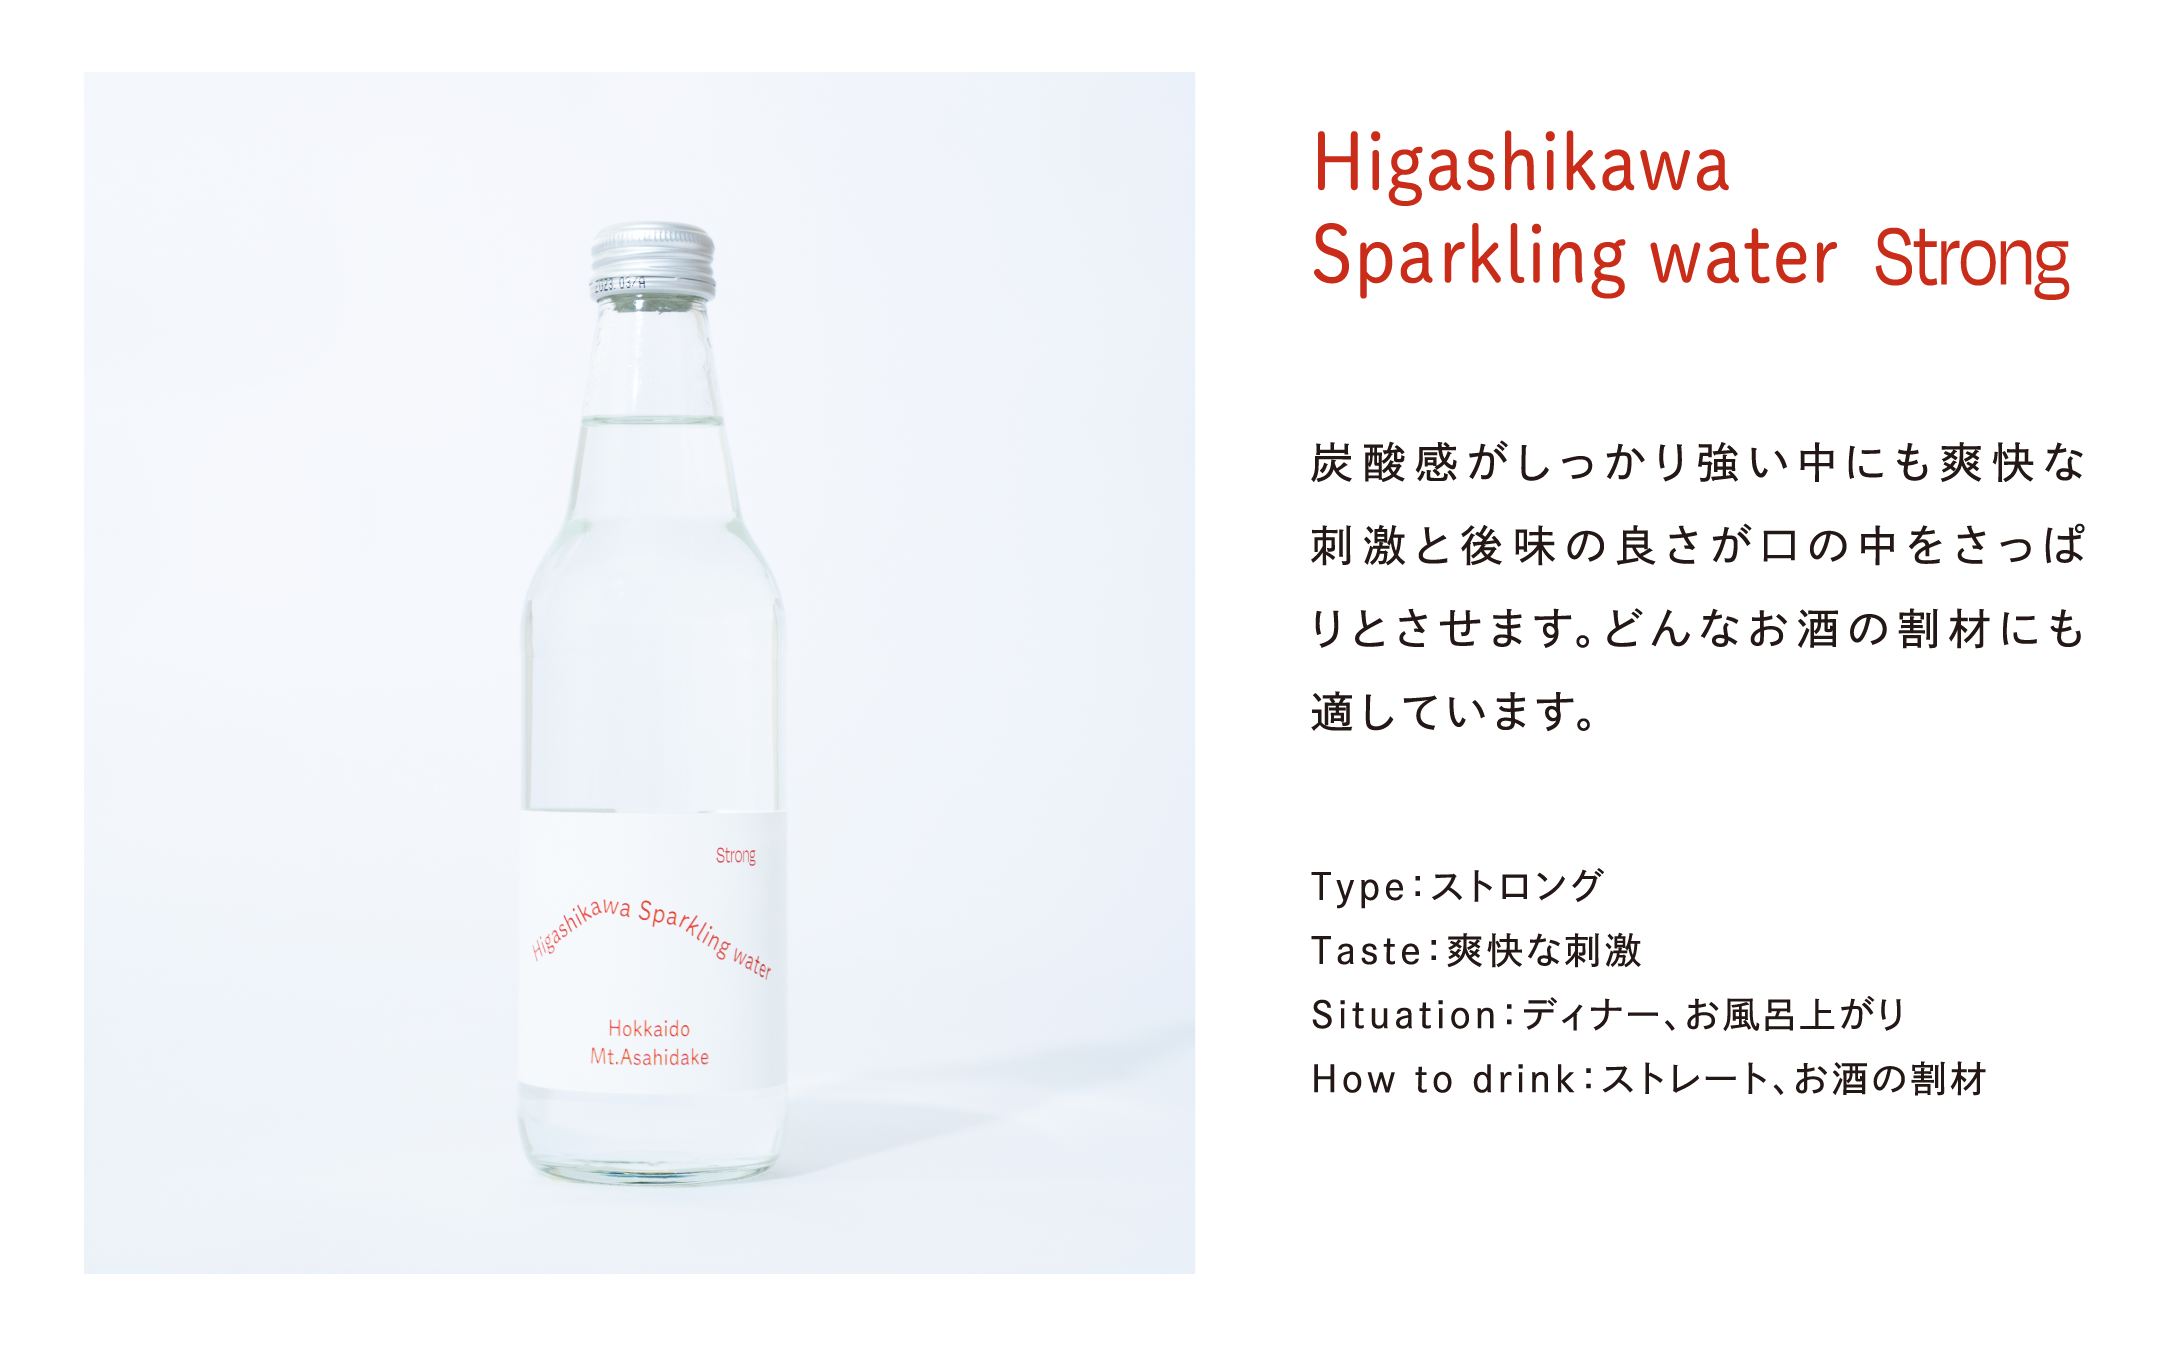 Higashikawa Sparkling water (東川スパークリングウォ―ター）Strong:強発泡タイプ 12本入り